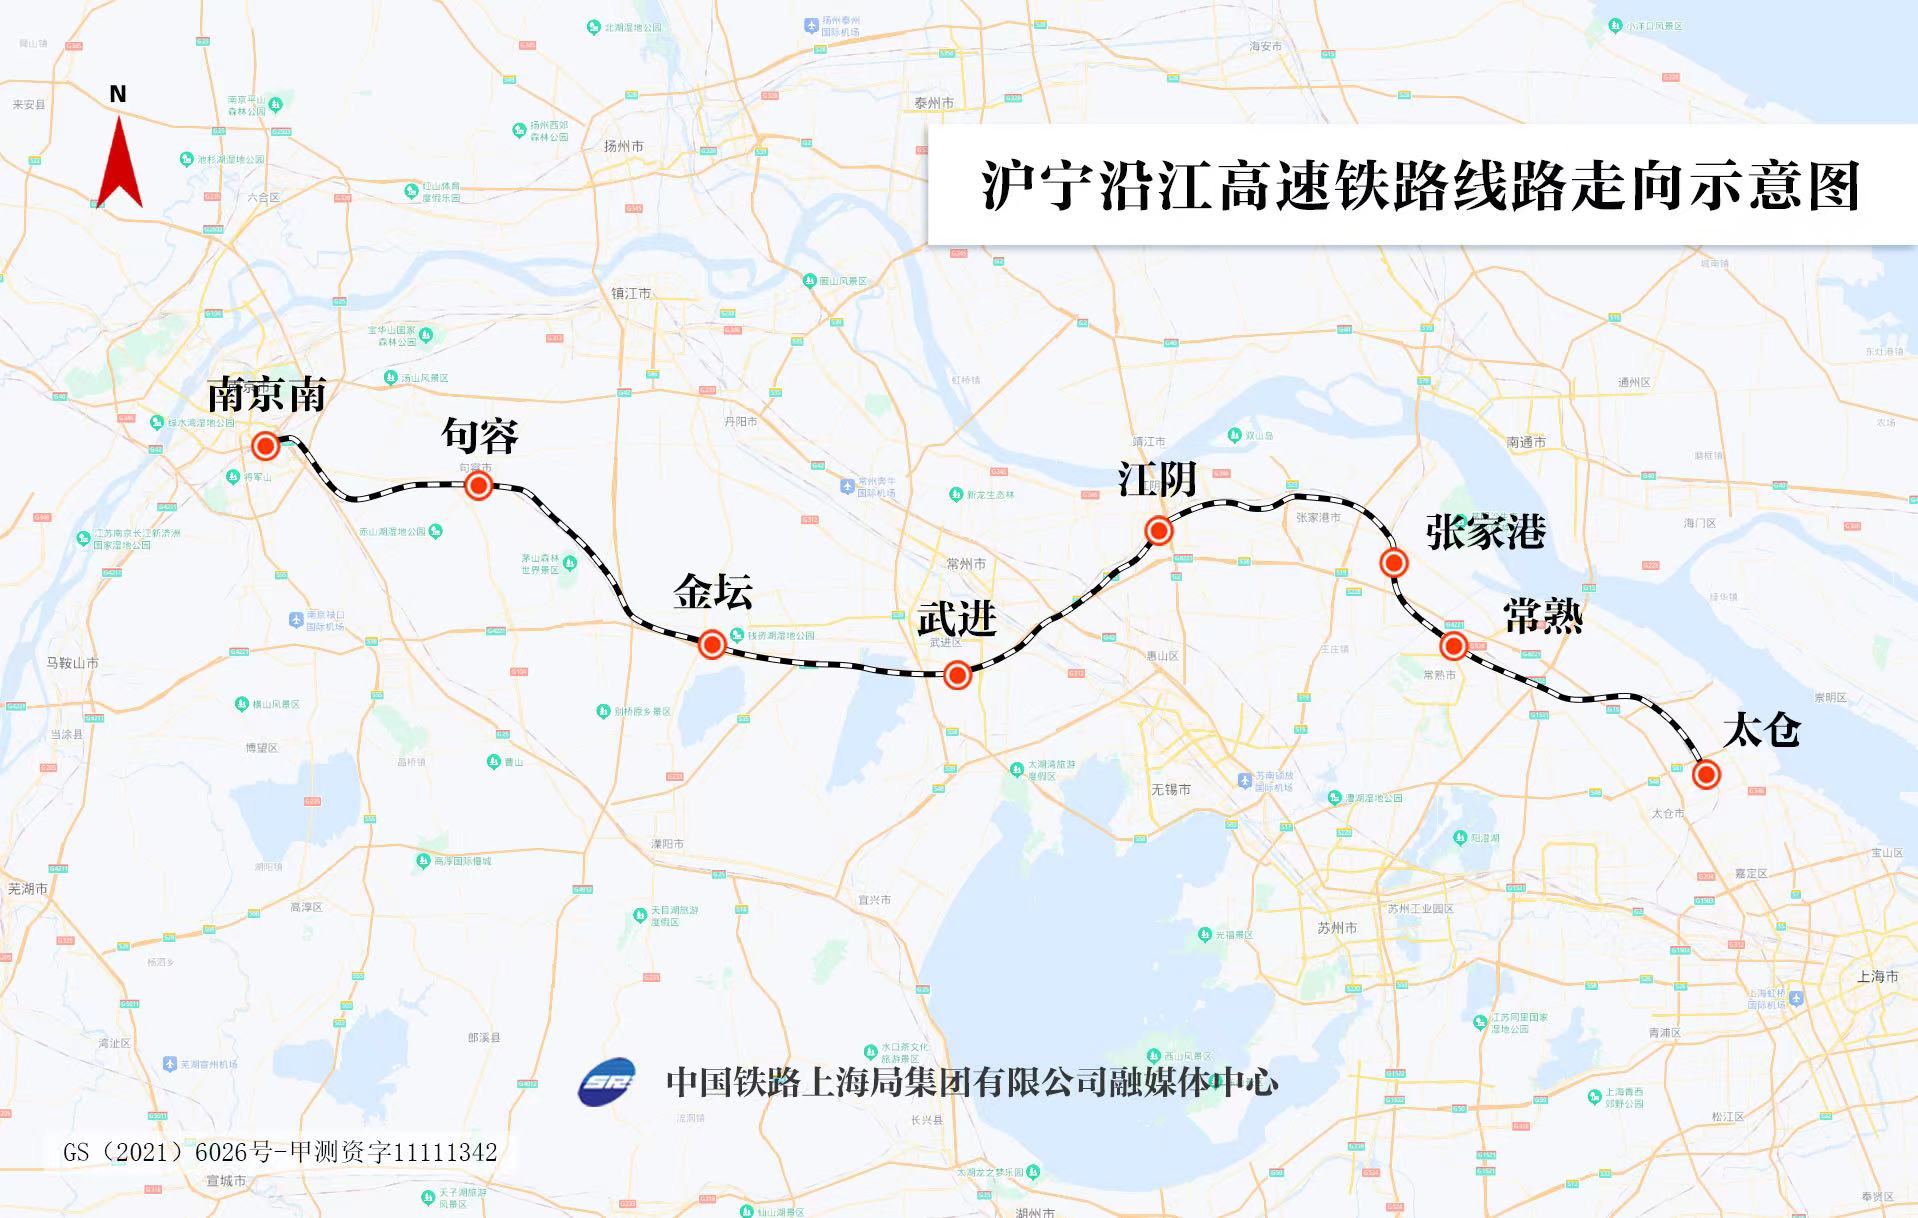 江苏省铁路集团副总经理卢余权表示,沪宁沿江高铁建设突出绿色发展